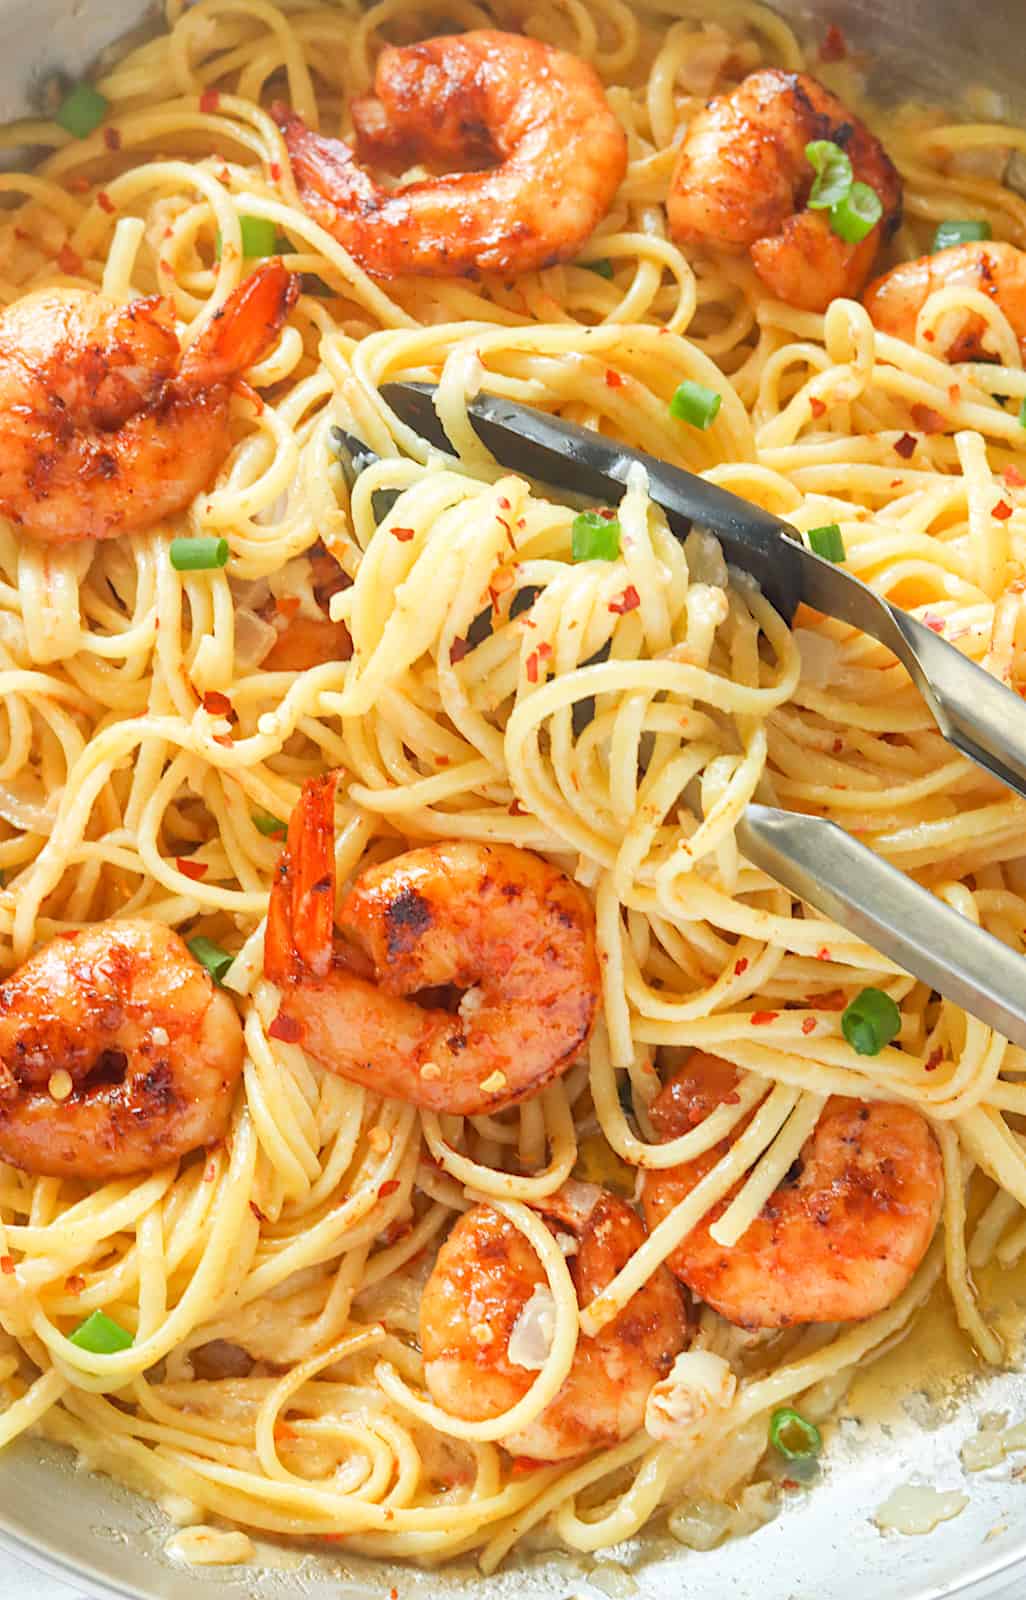 Bang bang shrimp pasta being served for your enjoyment